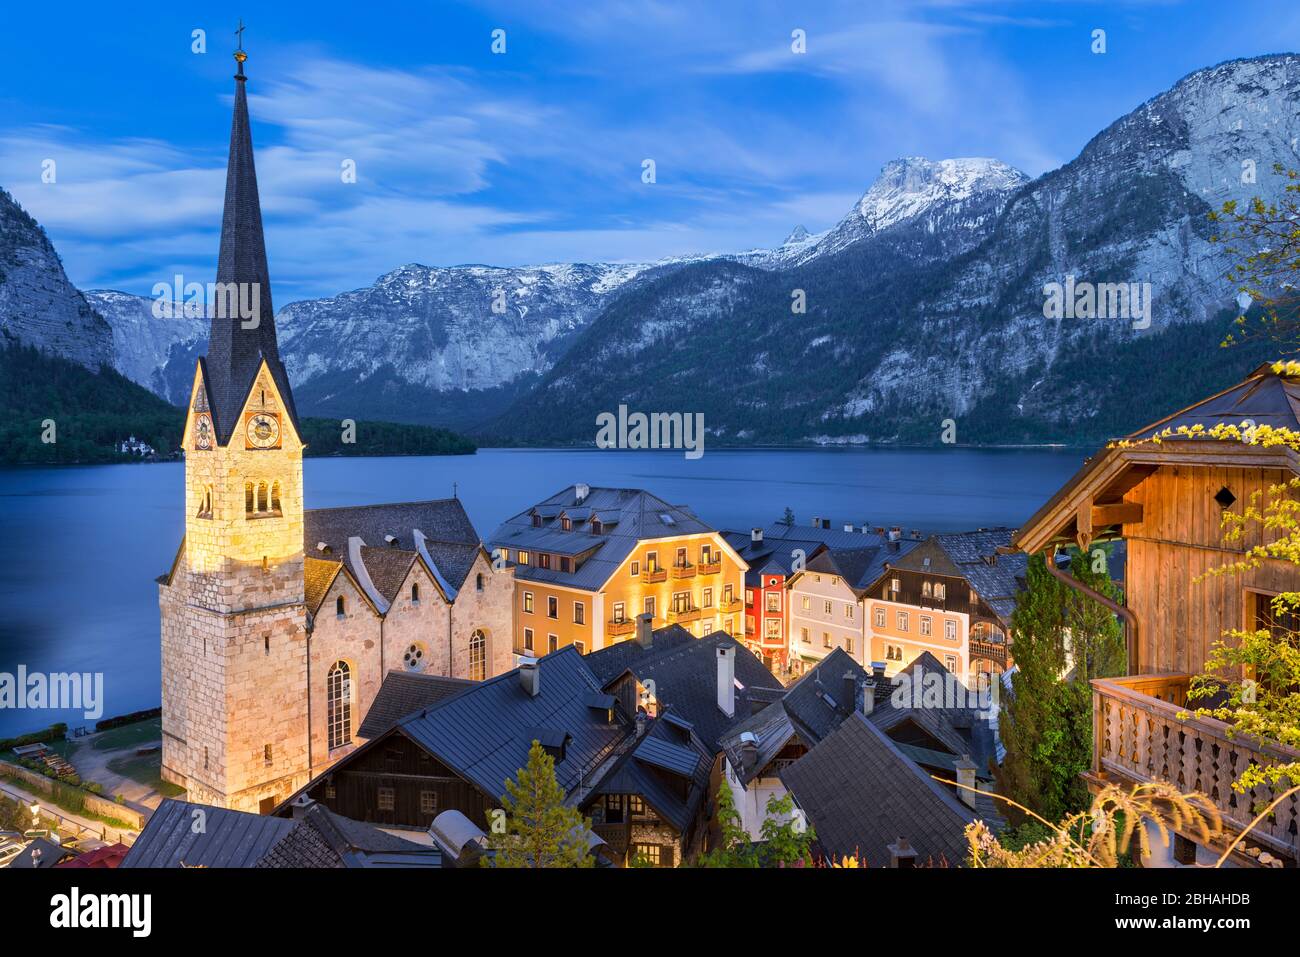 Famous mountain village Hallstatt at night, Austria Stock Photo